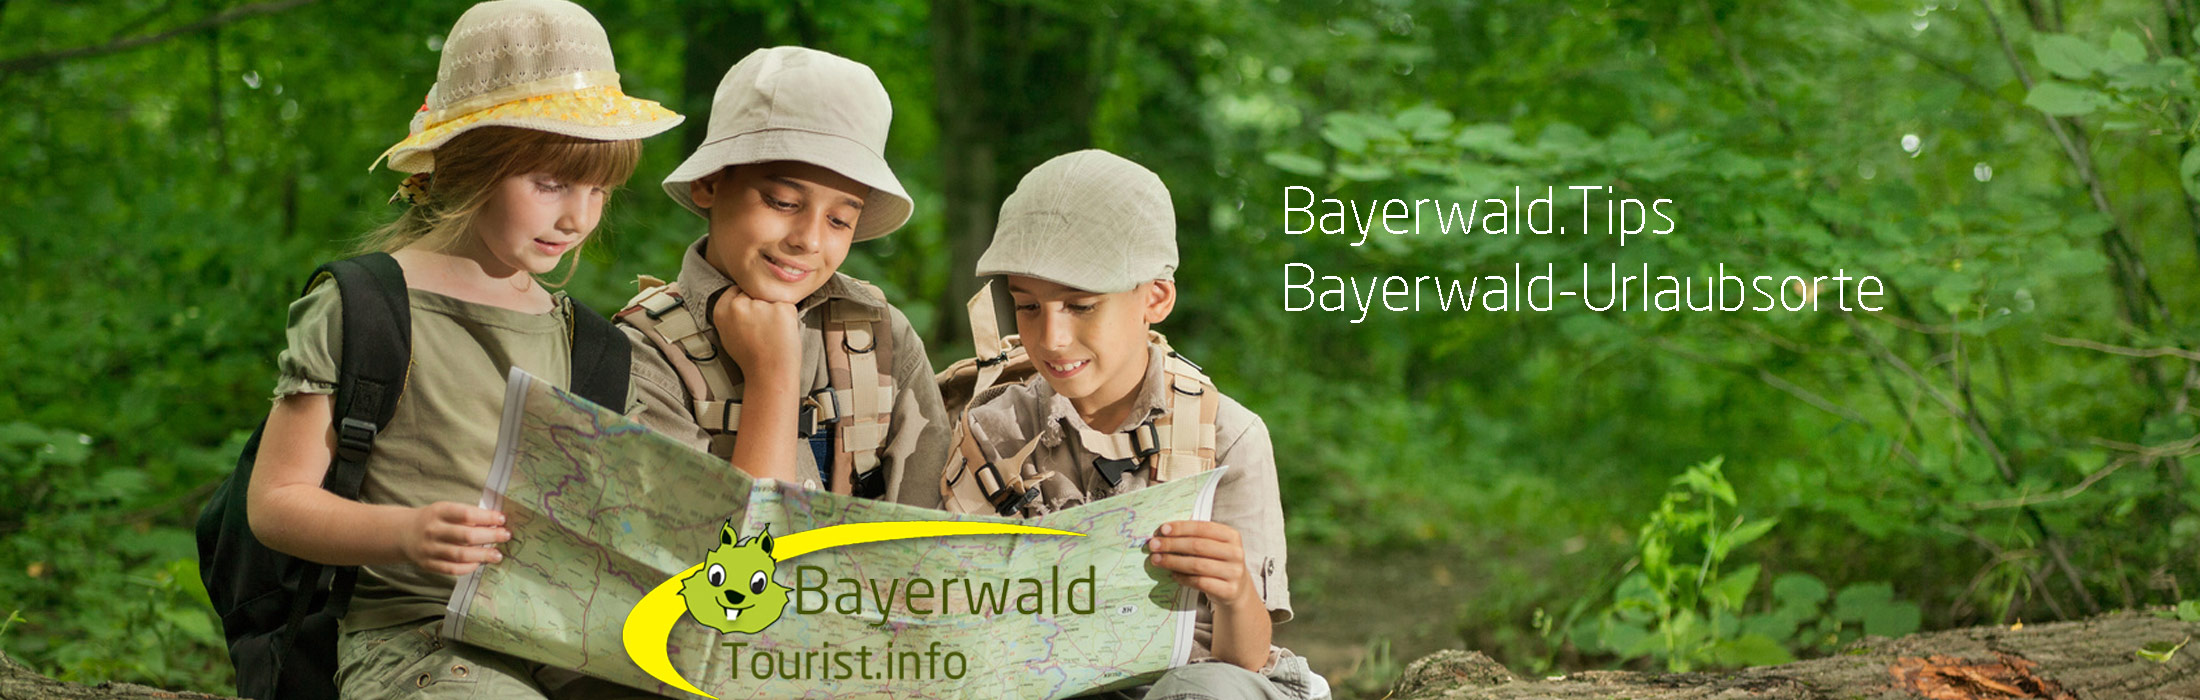 Bayerwald Urlaubsorte